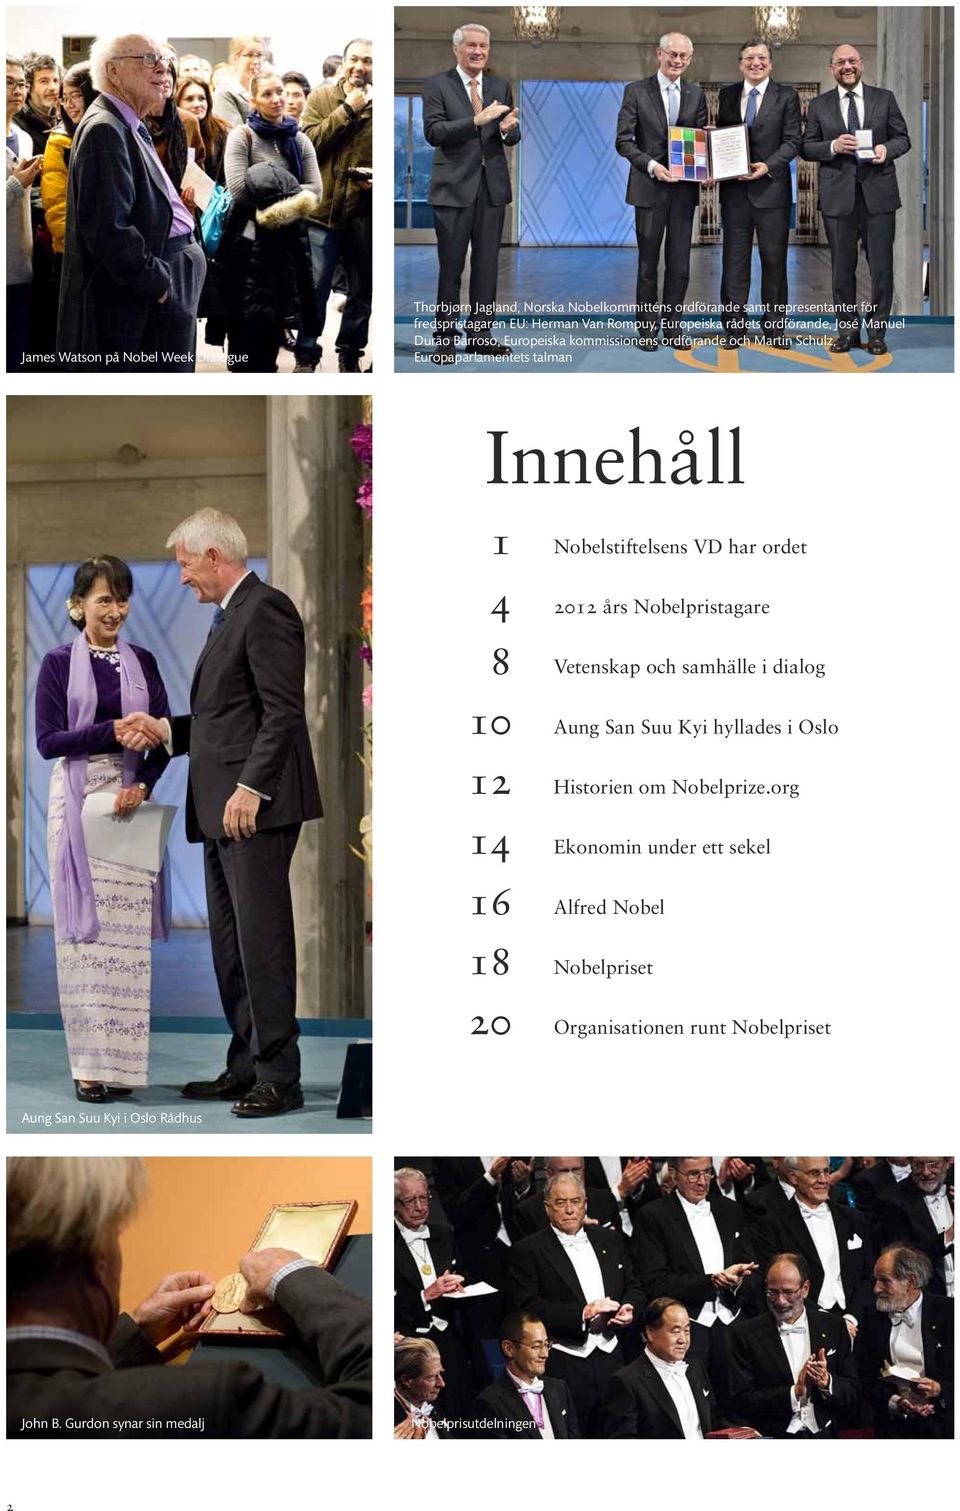 14 16 18 20 Nobelstiftelsens VD har ordet 2012 års Nobelpristagare Vetenskap och samhälle i dialog Aung San Suu Kyi hyllades i Oslo Historien om Nobelprize.